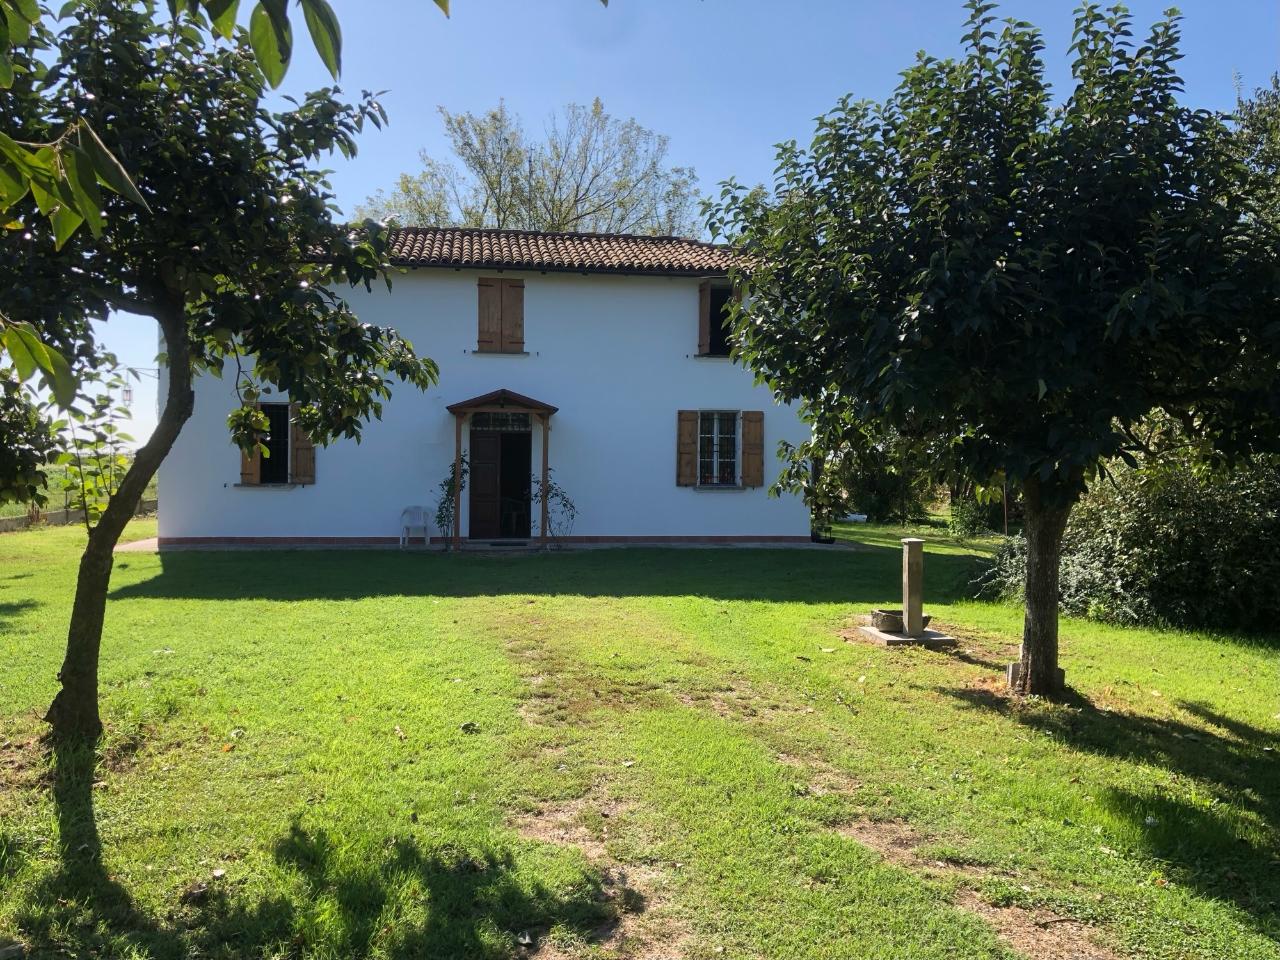 Villa unifamiliare in vendita a Baricella